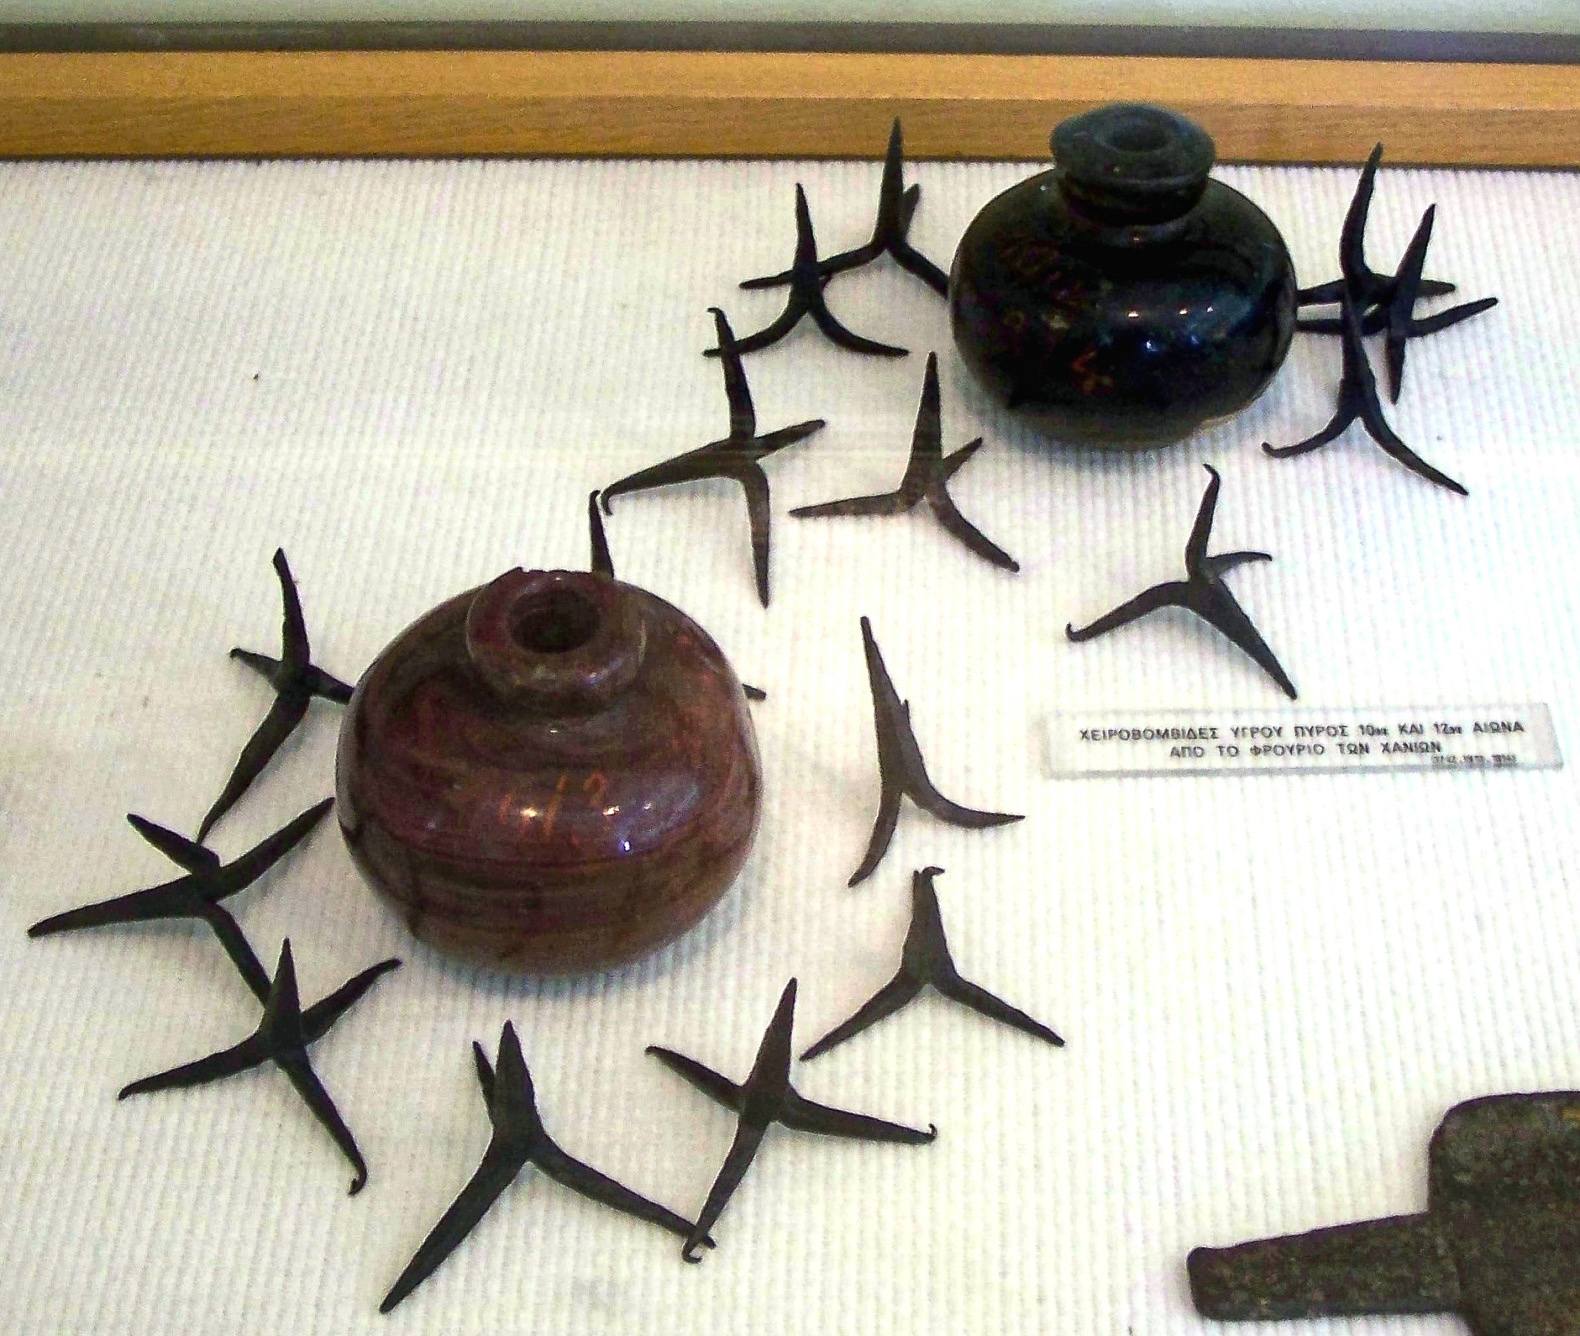 Grenade seramiiki jupụtara na ọkụ Gris, nke caltrops gbara ya gburugburu, narị afọ nke 10-12, National Historical Museum, Athens, Greece.